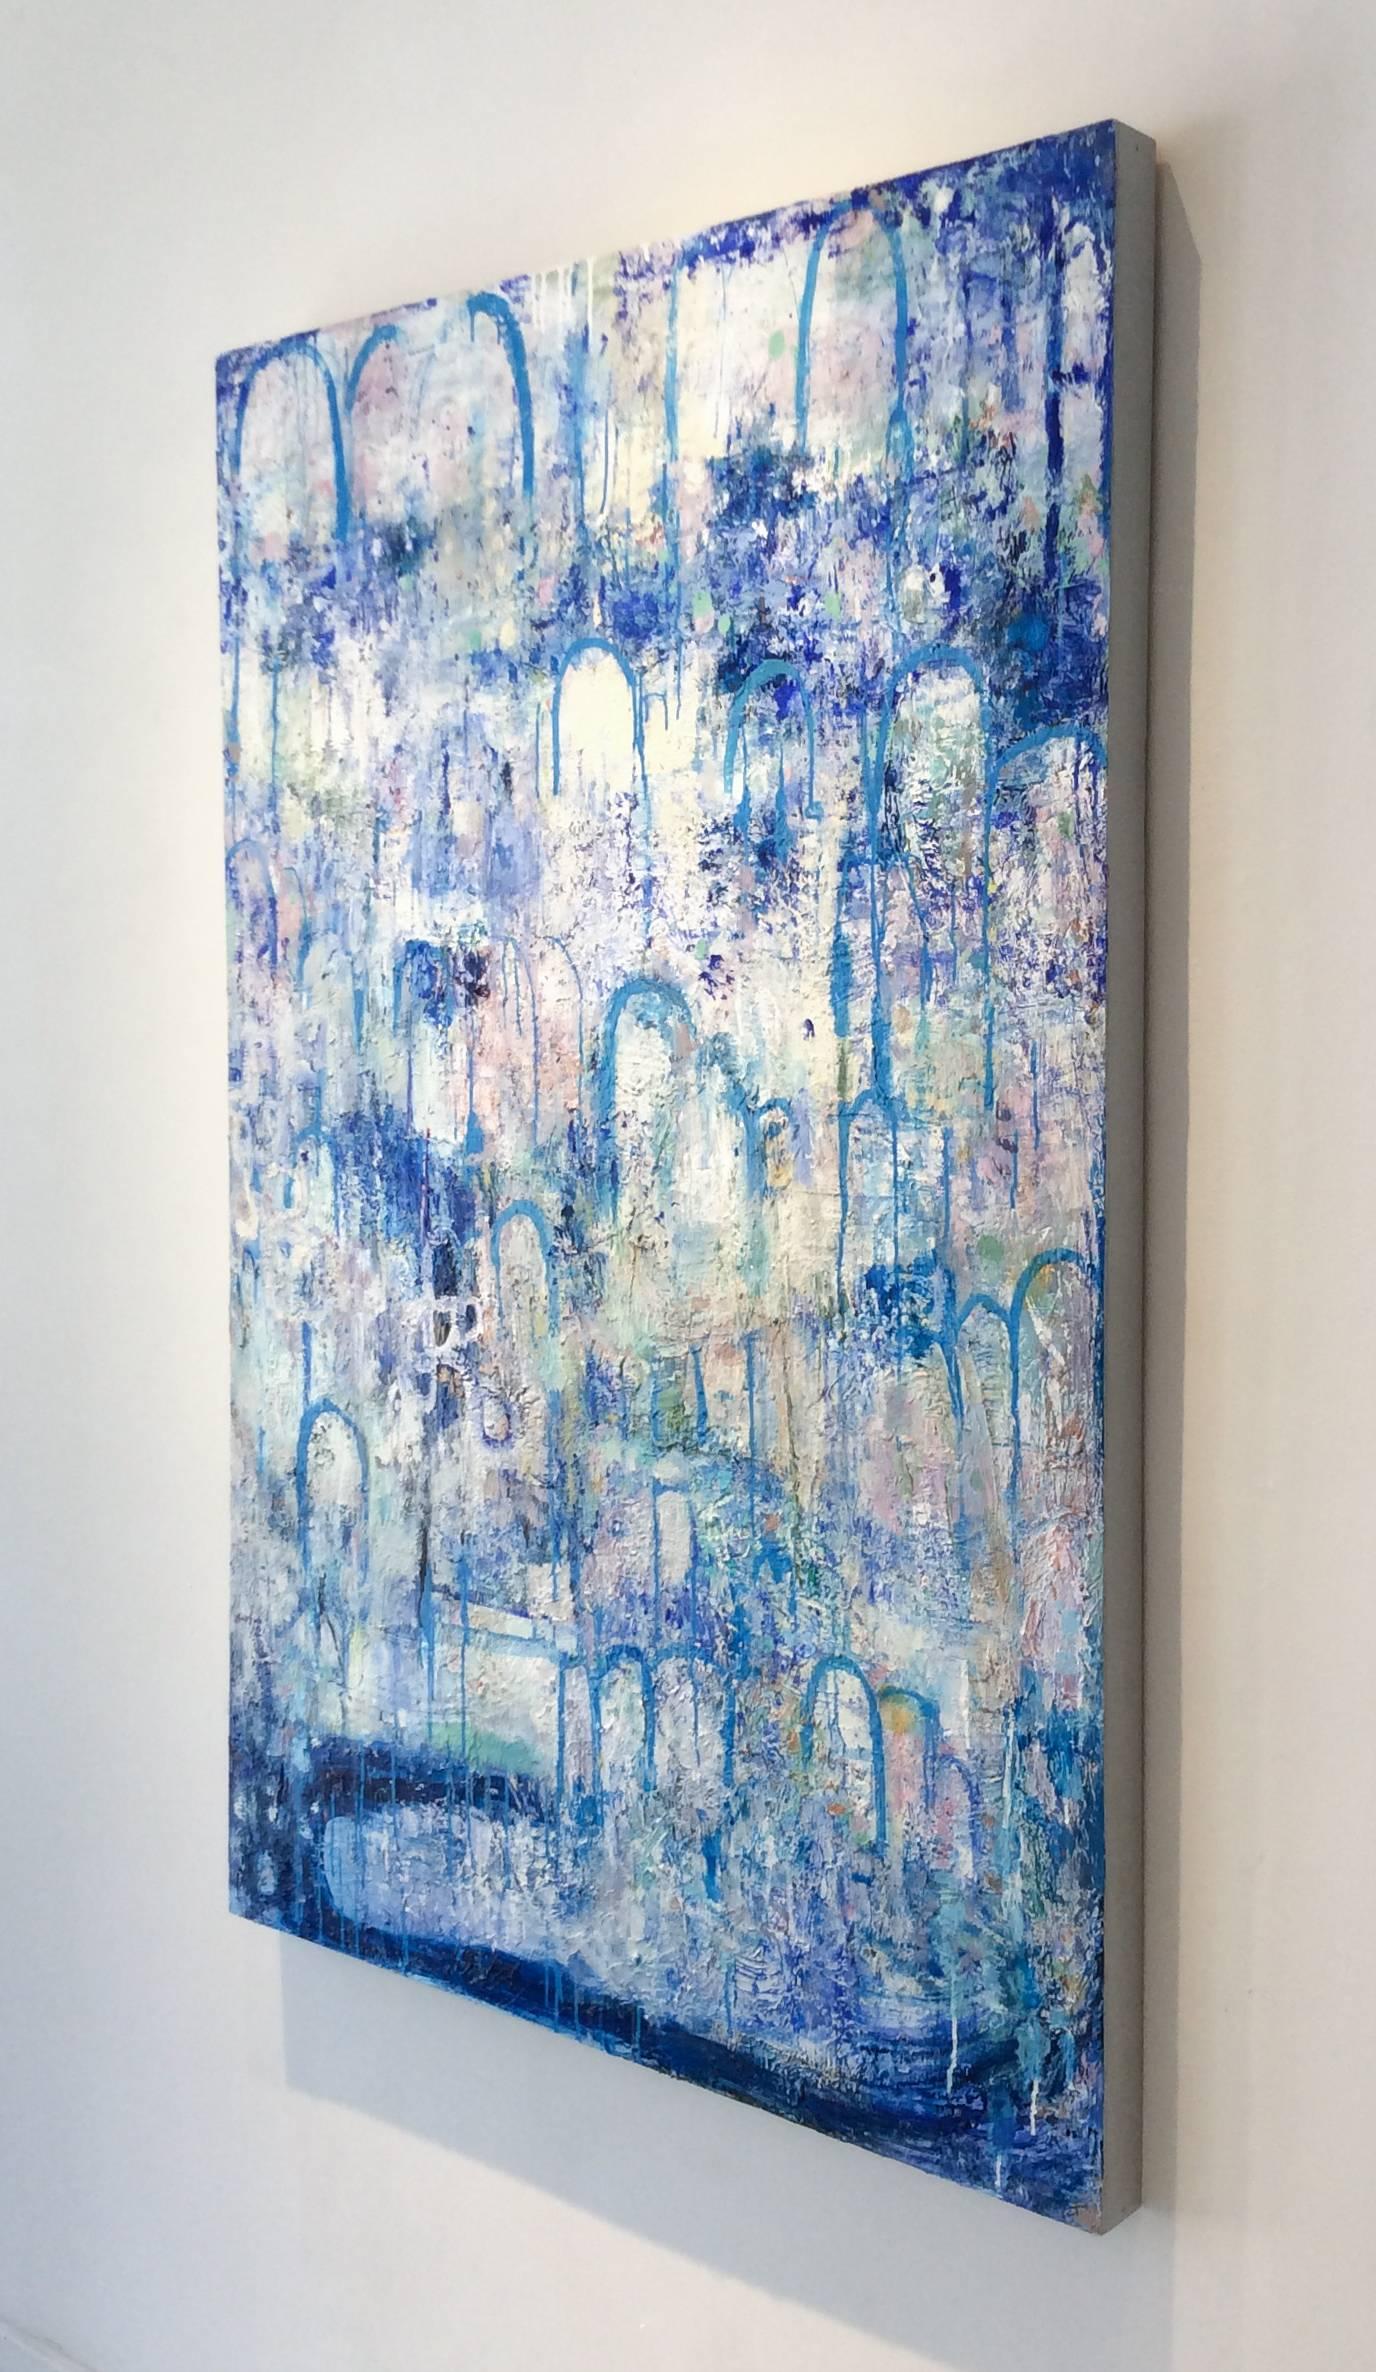 Hydrology (peinture expressionniste abstraite verticale contemporaine, bleue et blanche) - Gris Landscape Painting par Ragellah Rourke